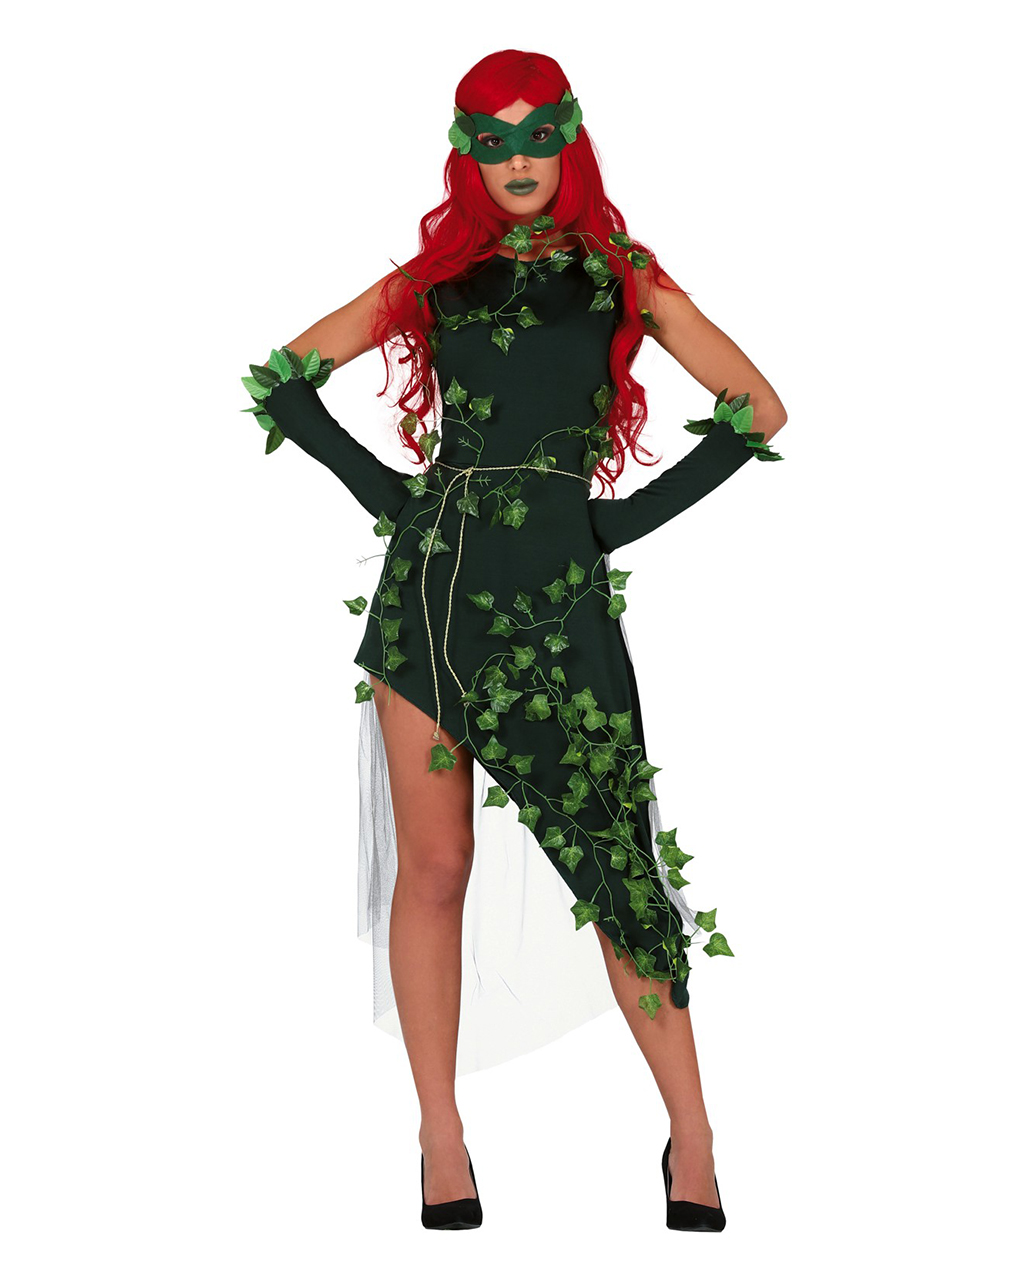 Naturgöttin Ivy Damen Kostüm mit Maske hier kaufen L von Horror-Shop.com